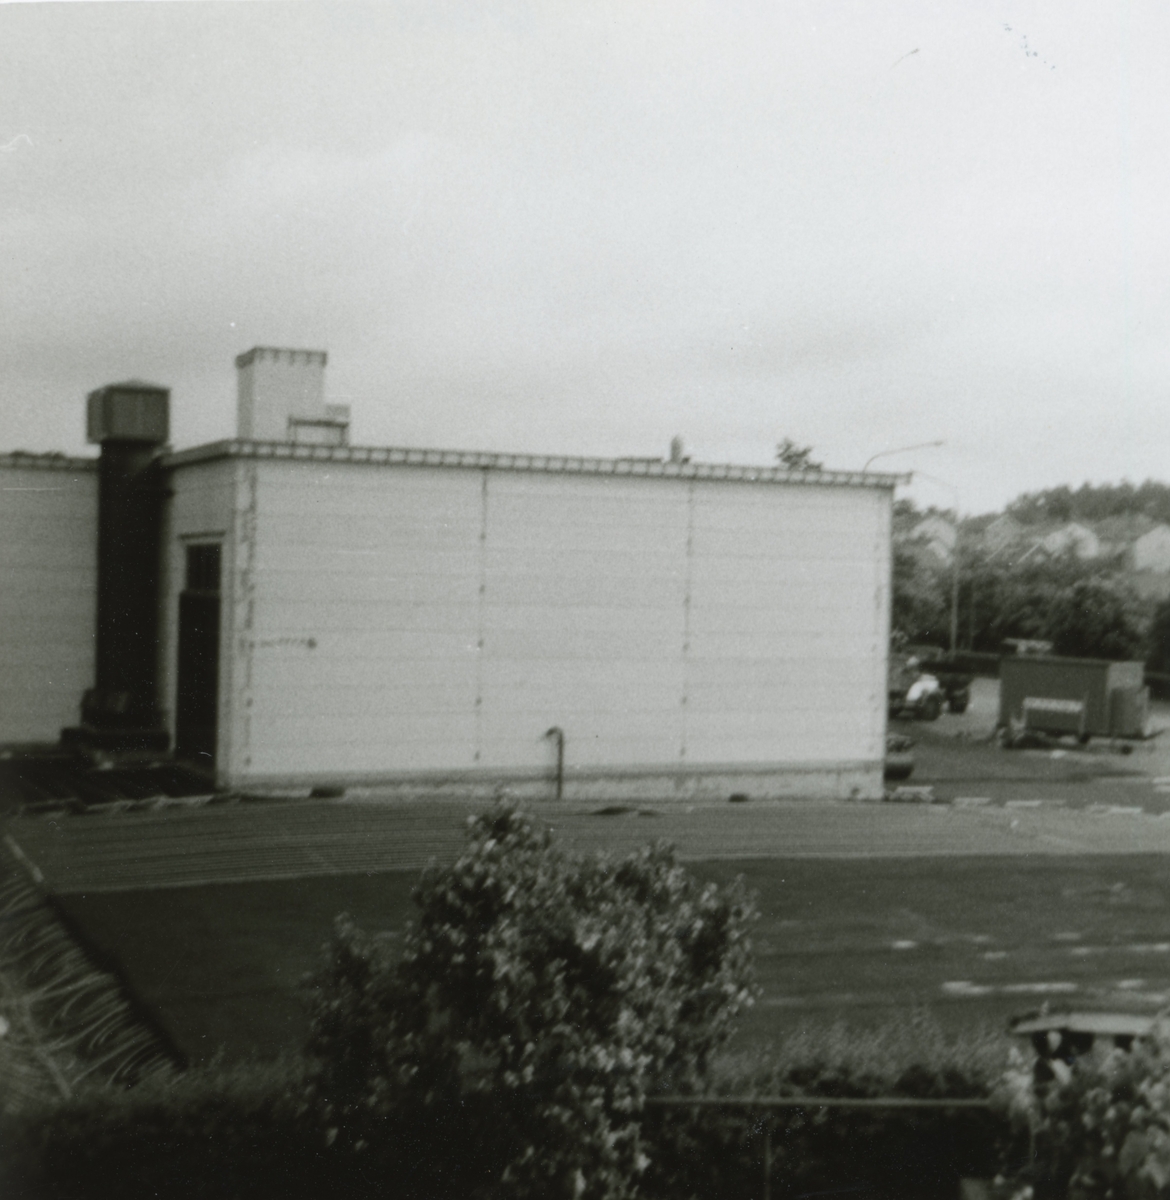 Linköpingtrafikens nya verkstadsdel i Barhäll 1977.
Bildtext: Nya verkstadsdelen under byggnad i Barhäll 1977.